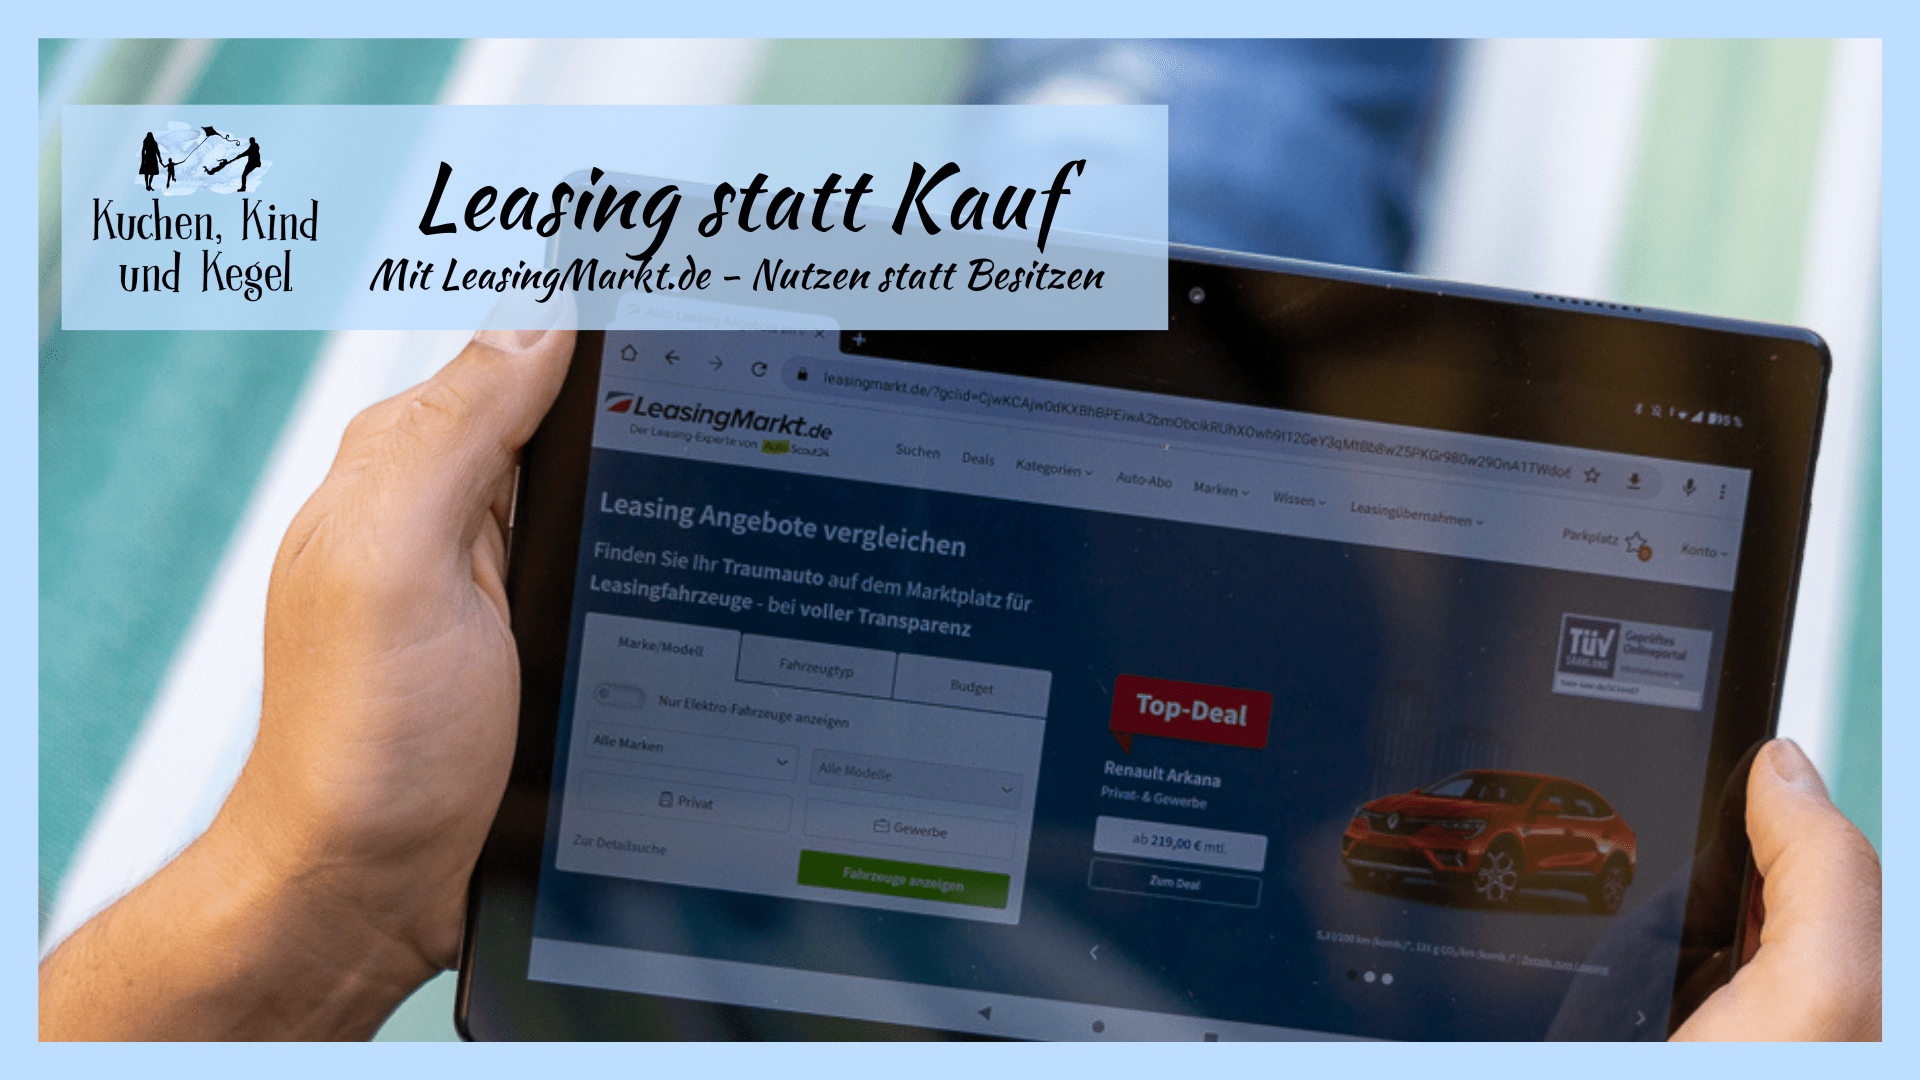 LeasingMarkt.de – Leasing statt Kauf: Vom Besitz zur reinen Nutzung